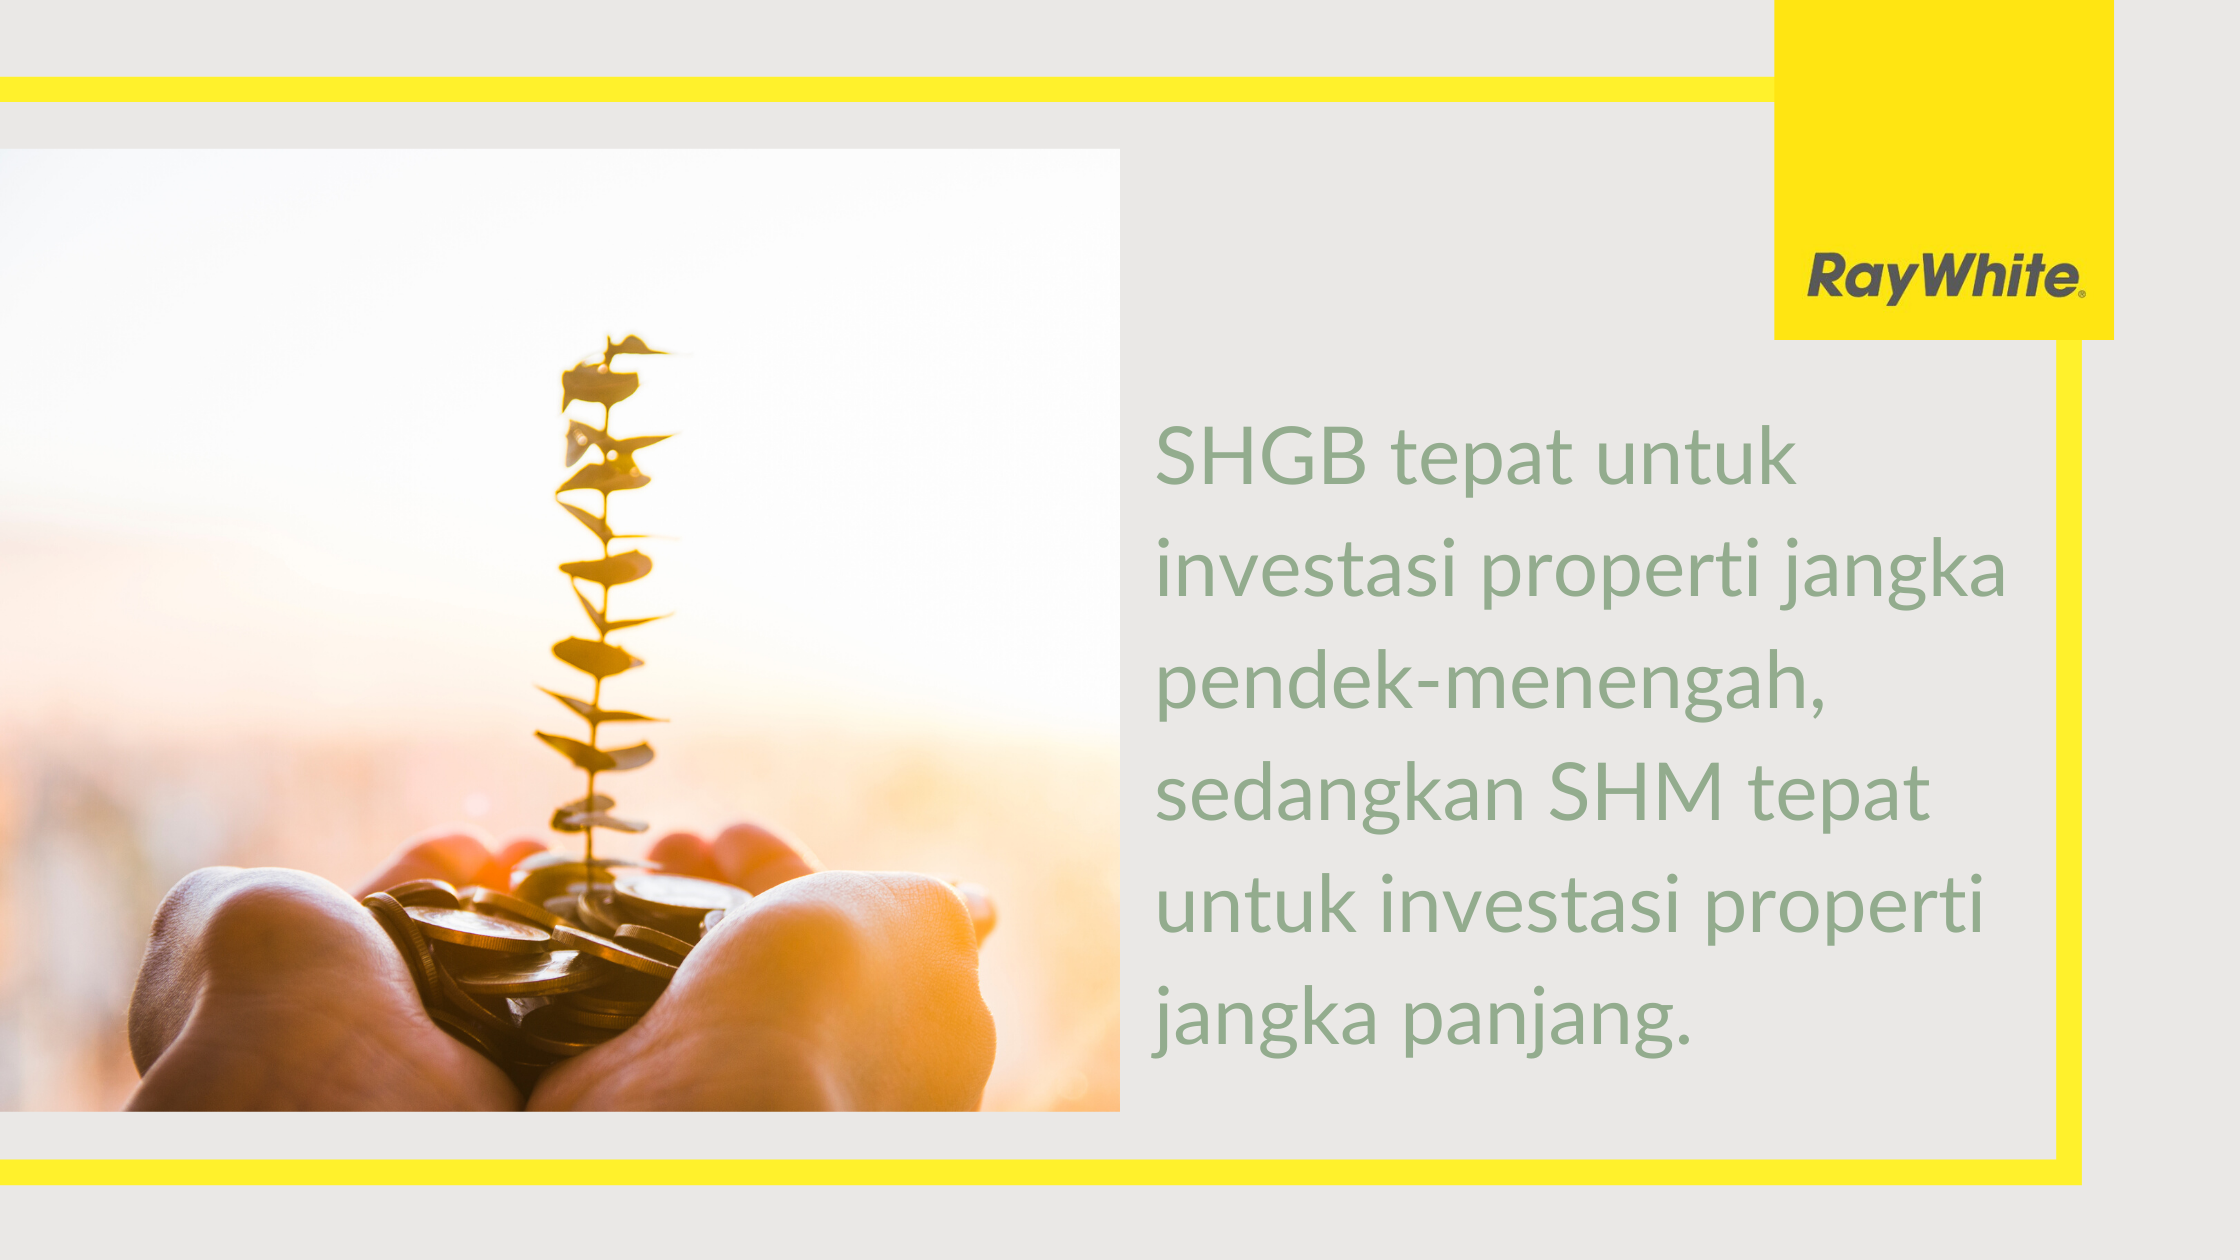 SHGB-Investasi-Jangka-Pendek-Menengah-SHM-Investasi-Jangka-Panjang-Ray-White